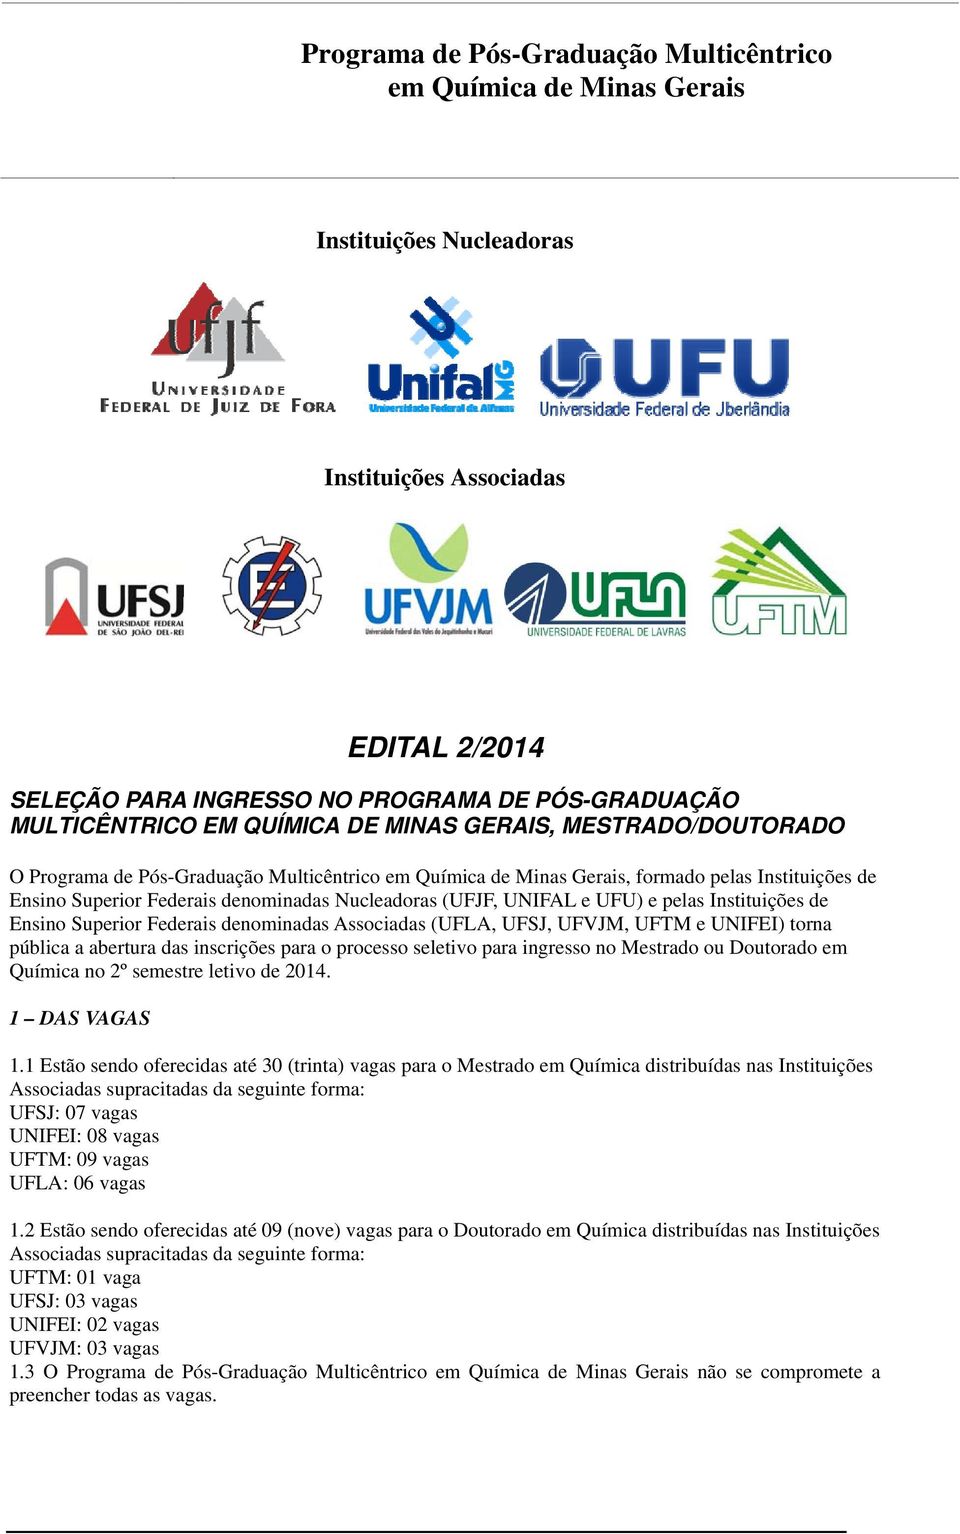 Associadas (UFLA, UFSJ, UFVJM, UFTM e UNIFEI) torna pública a abertura das inscrições para o processo seletivo para ingresso no Mestrado ou Doutorado em Química no 2º semestre letivo de 2014.